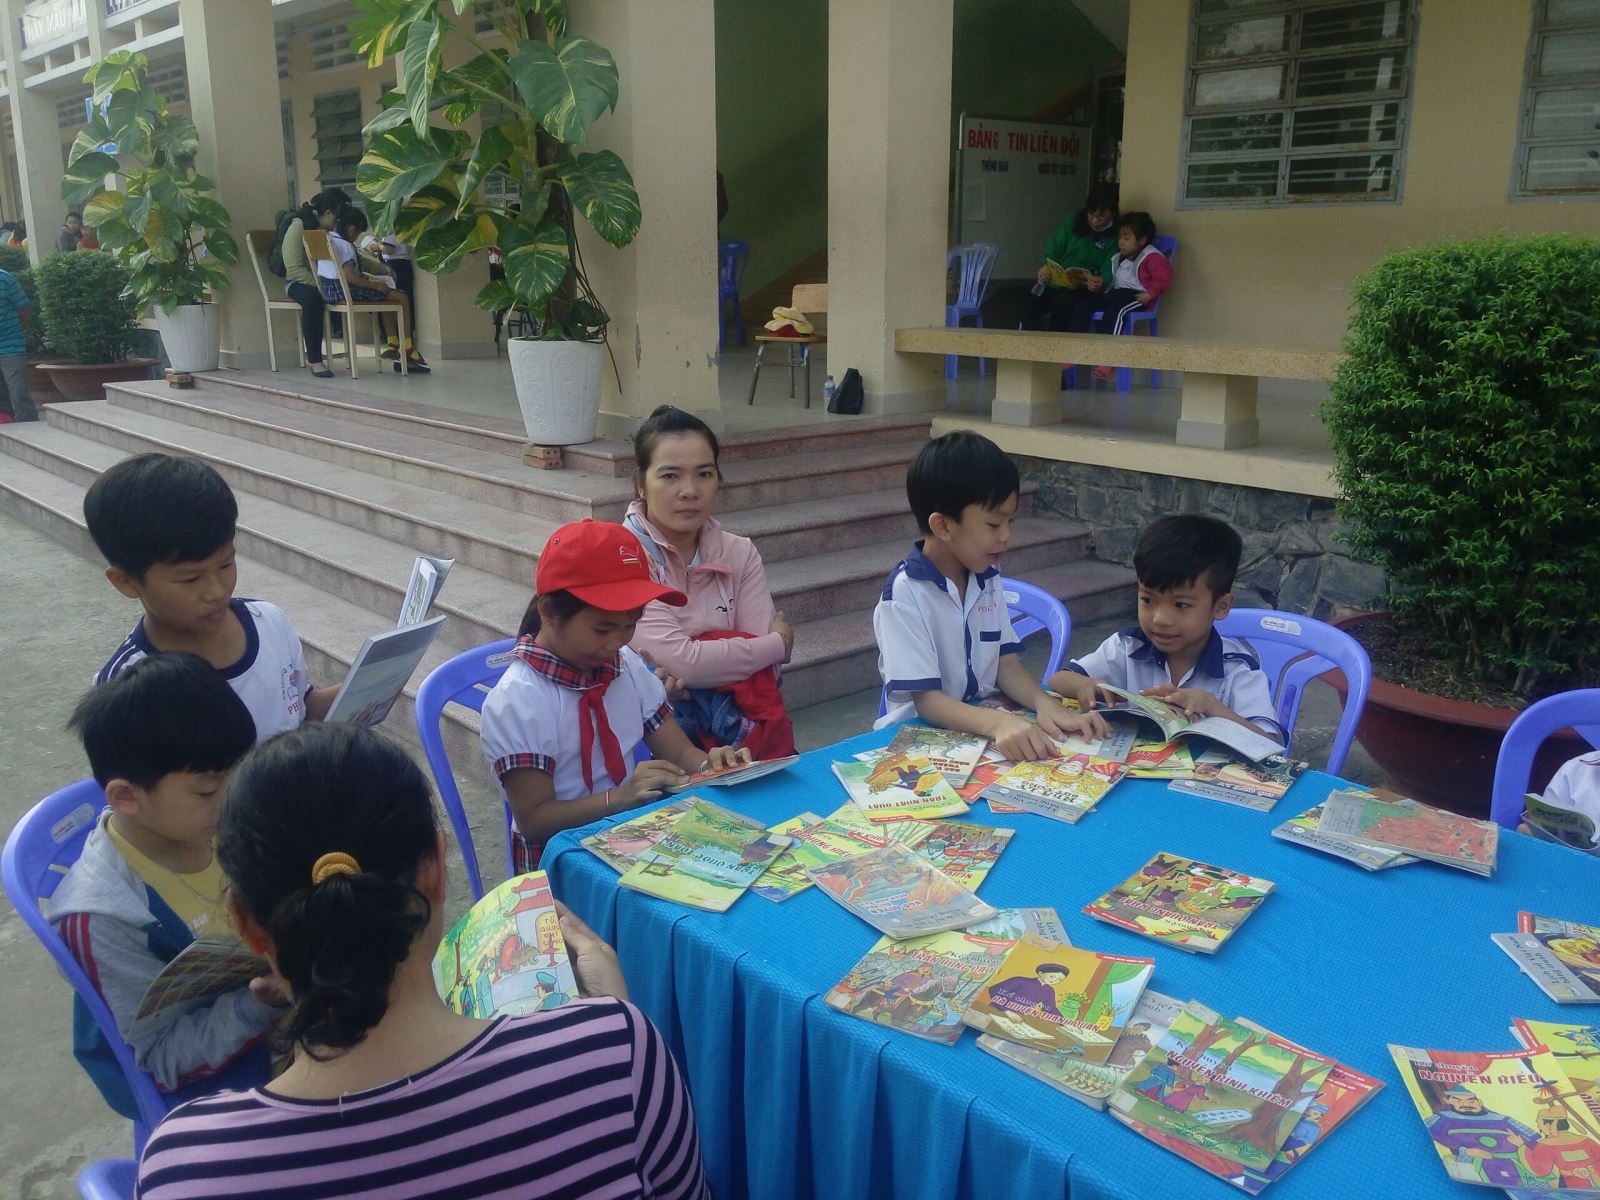 "Ngày Hội đọc sách" - Phát triển văn hóa đọc trong nhà trường